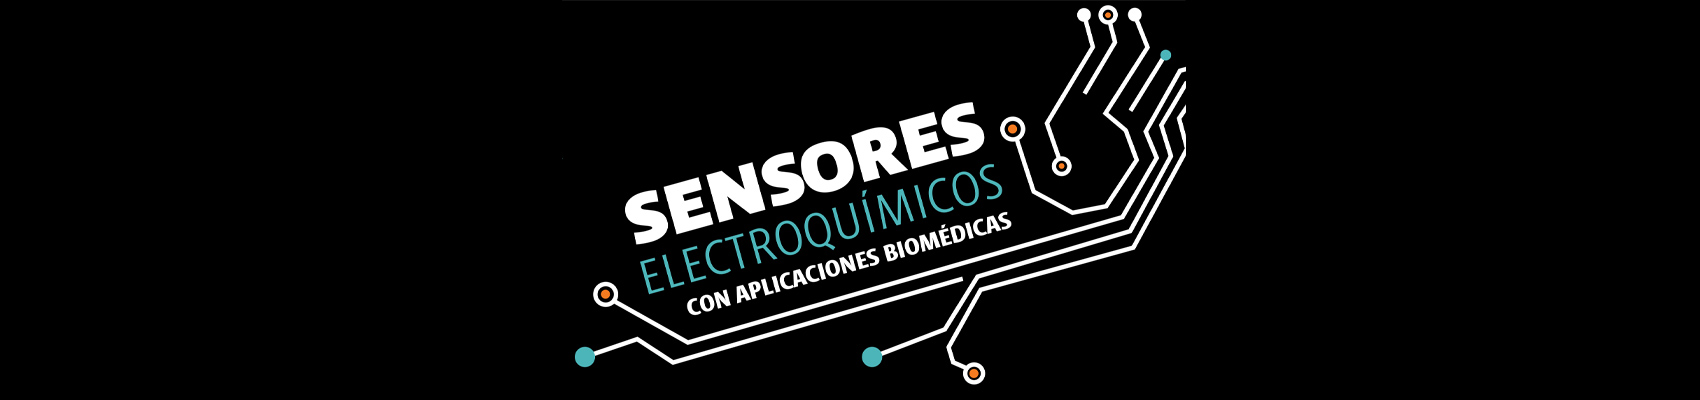 Sensores electroquímicos con aplicaciones biomédicas